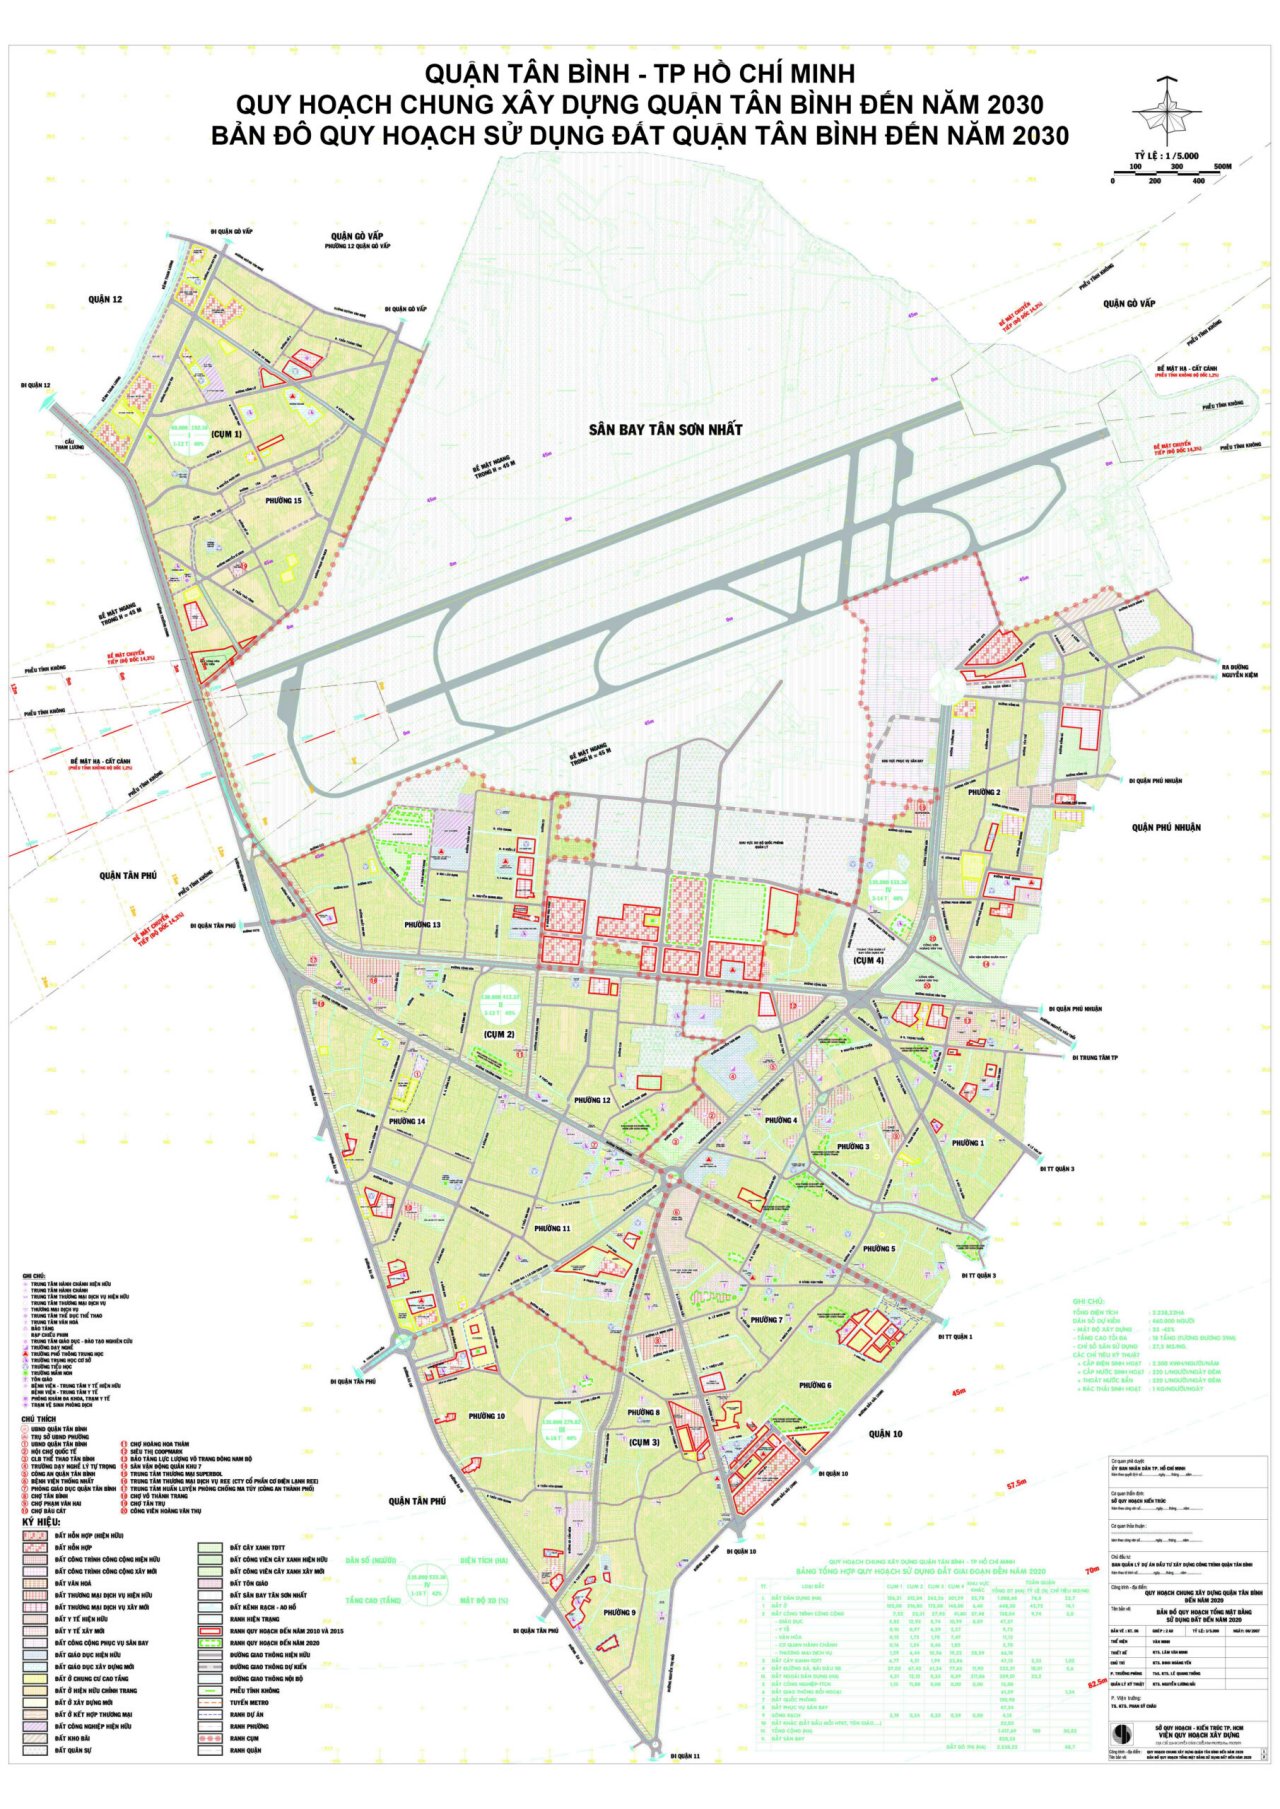 Bản đồ quy hoạch sử dụng đất tại Quận Tân Bình đến năm 2030